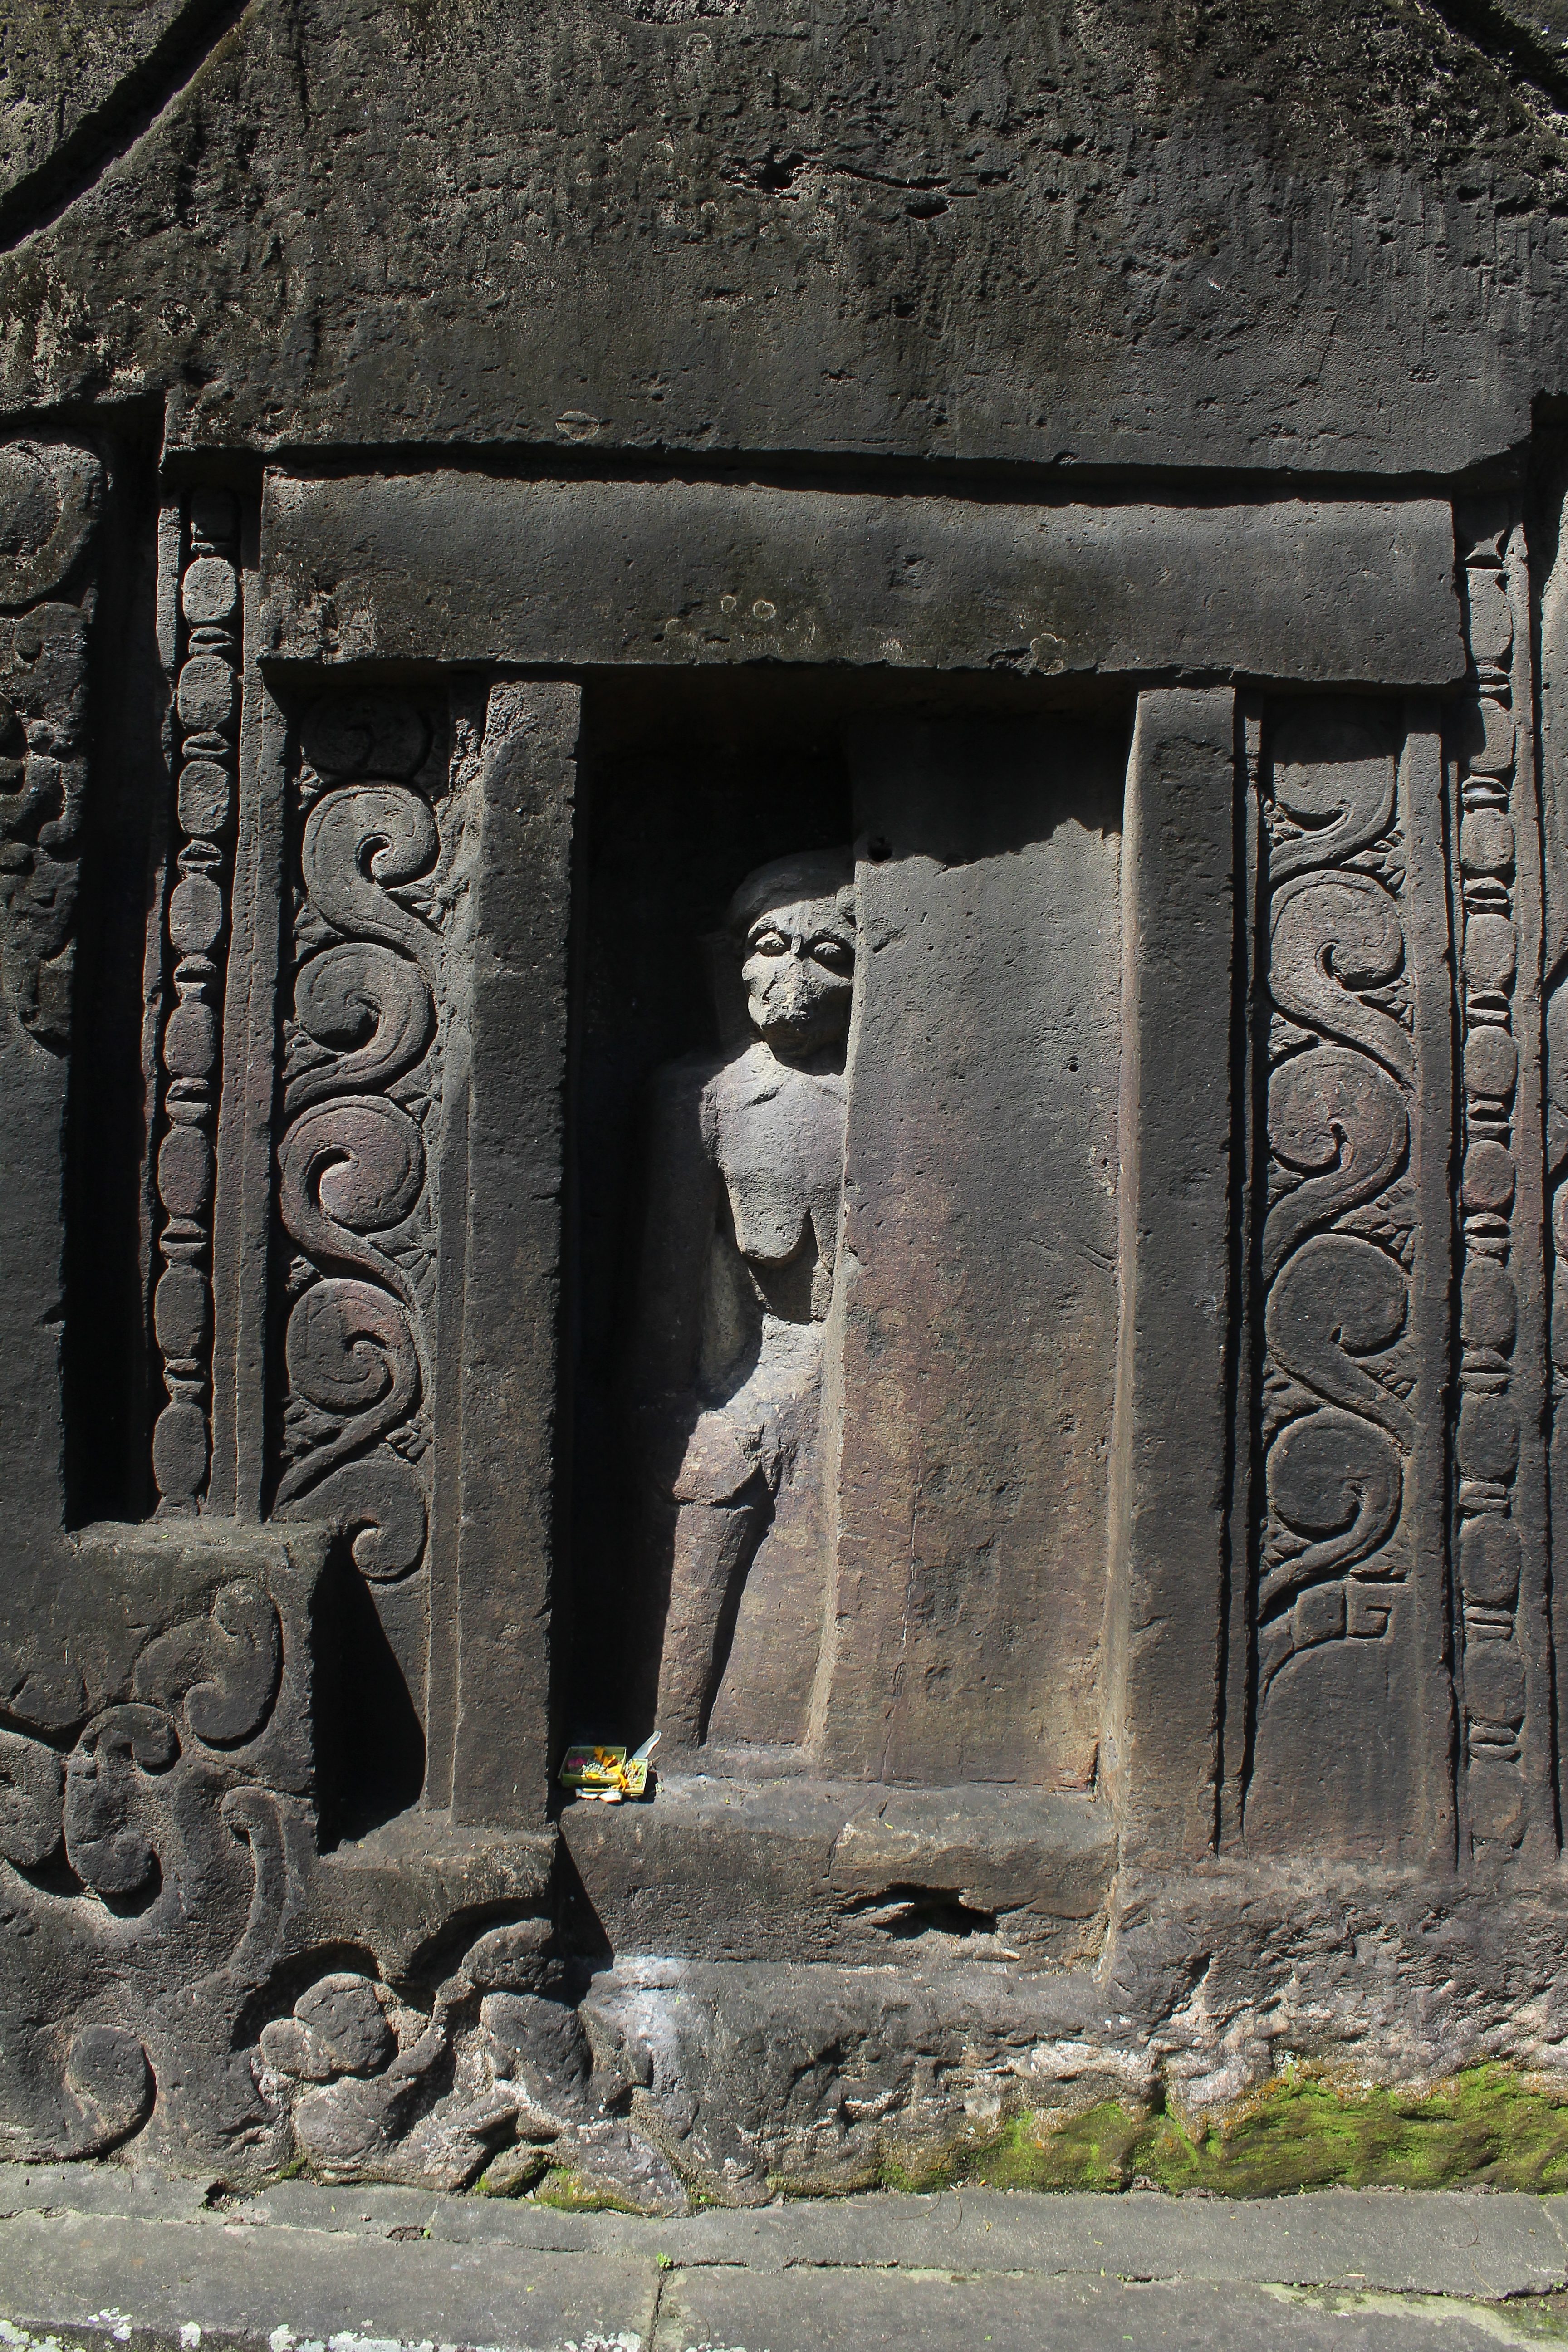 Relief showing figure through half door